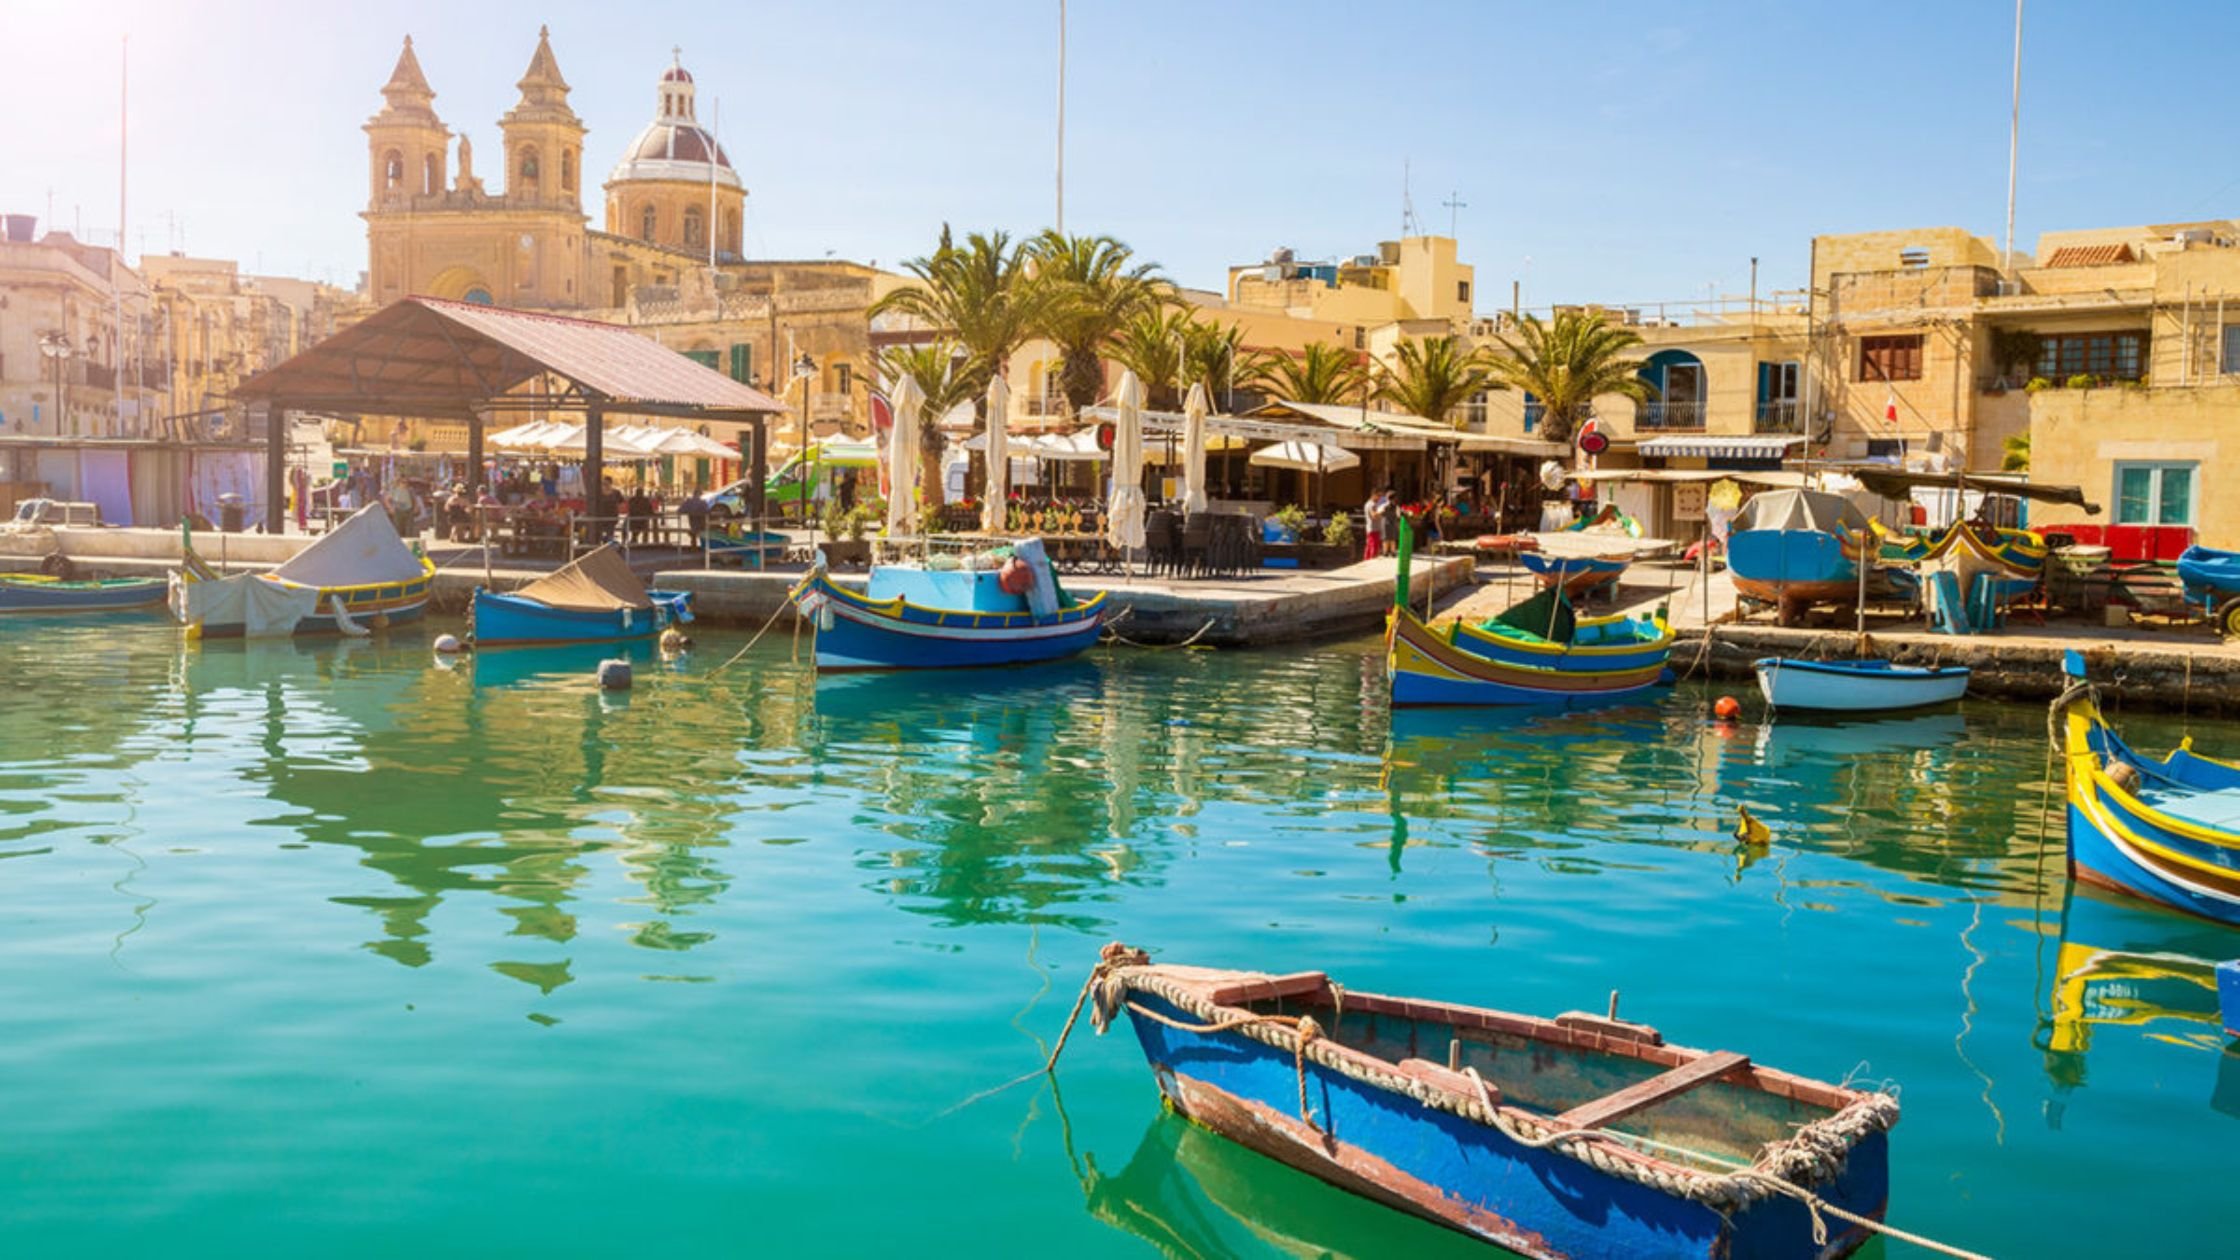 O programa de Cidadania por Investimento de Malta oferece acesso à UE e viagens sem visto para mais de 172 países, exigindo um período de residência de 12 a 36 meses